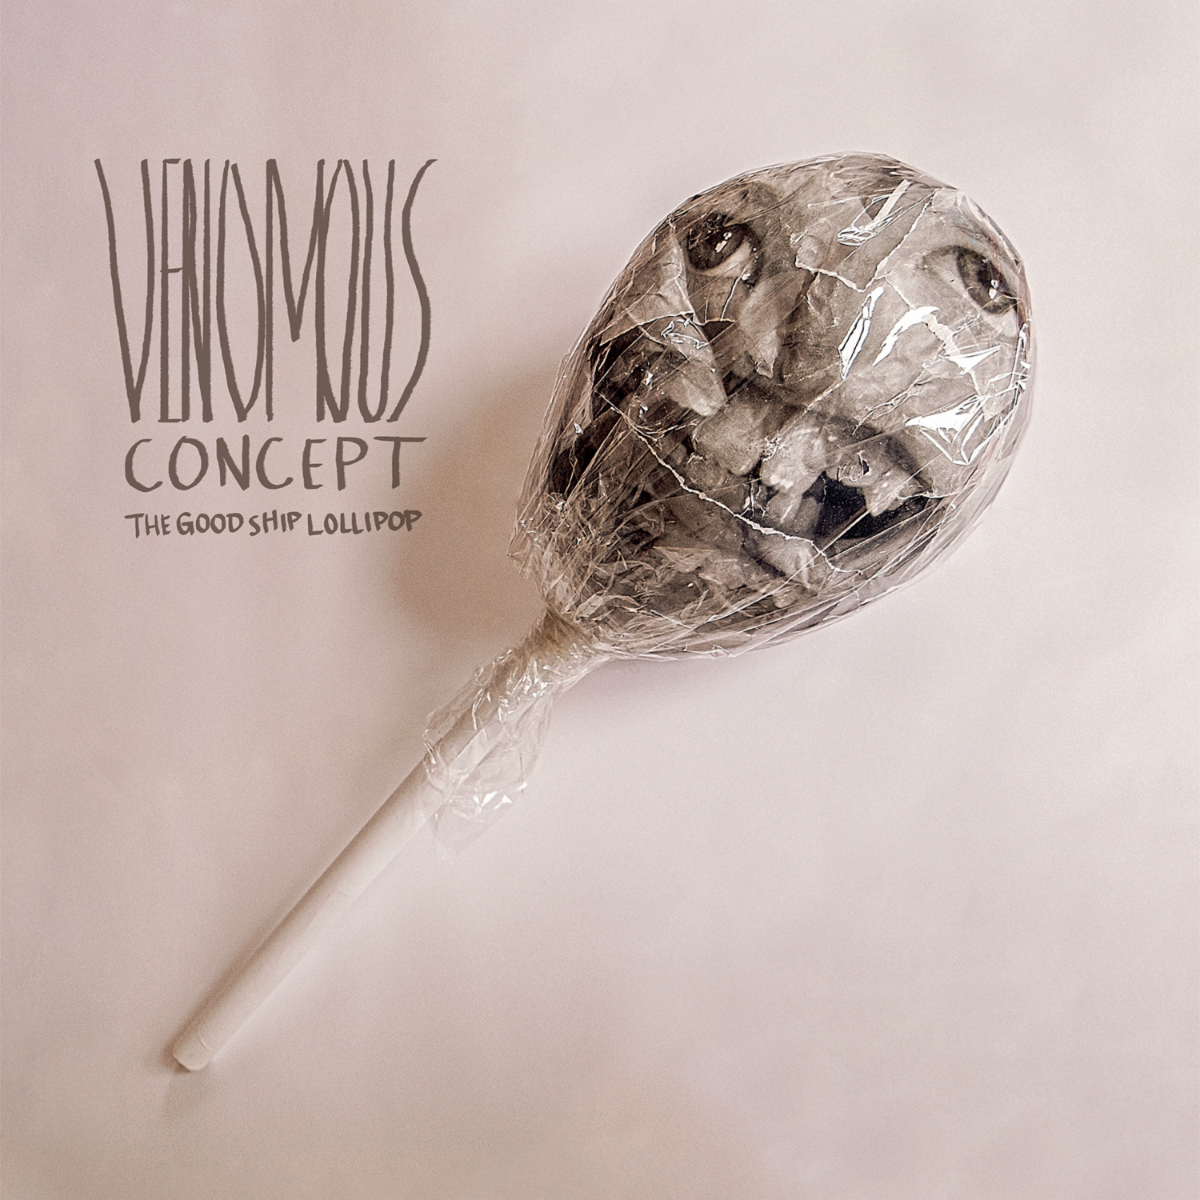 venomous-concept-the-good-ship-lollipop-artwork-3722241-webp-4509975-webp